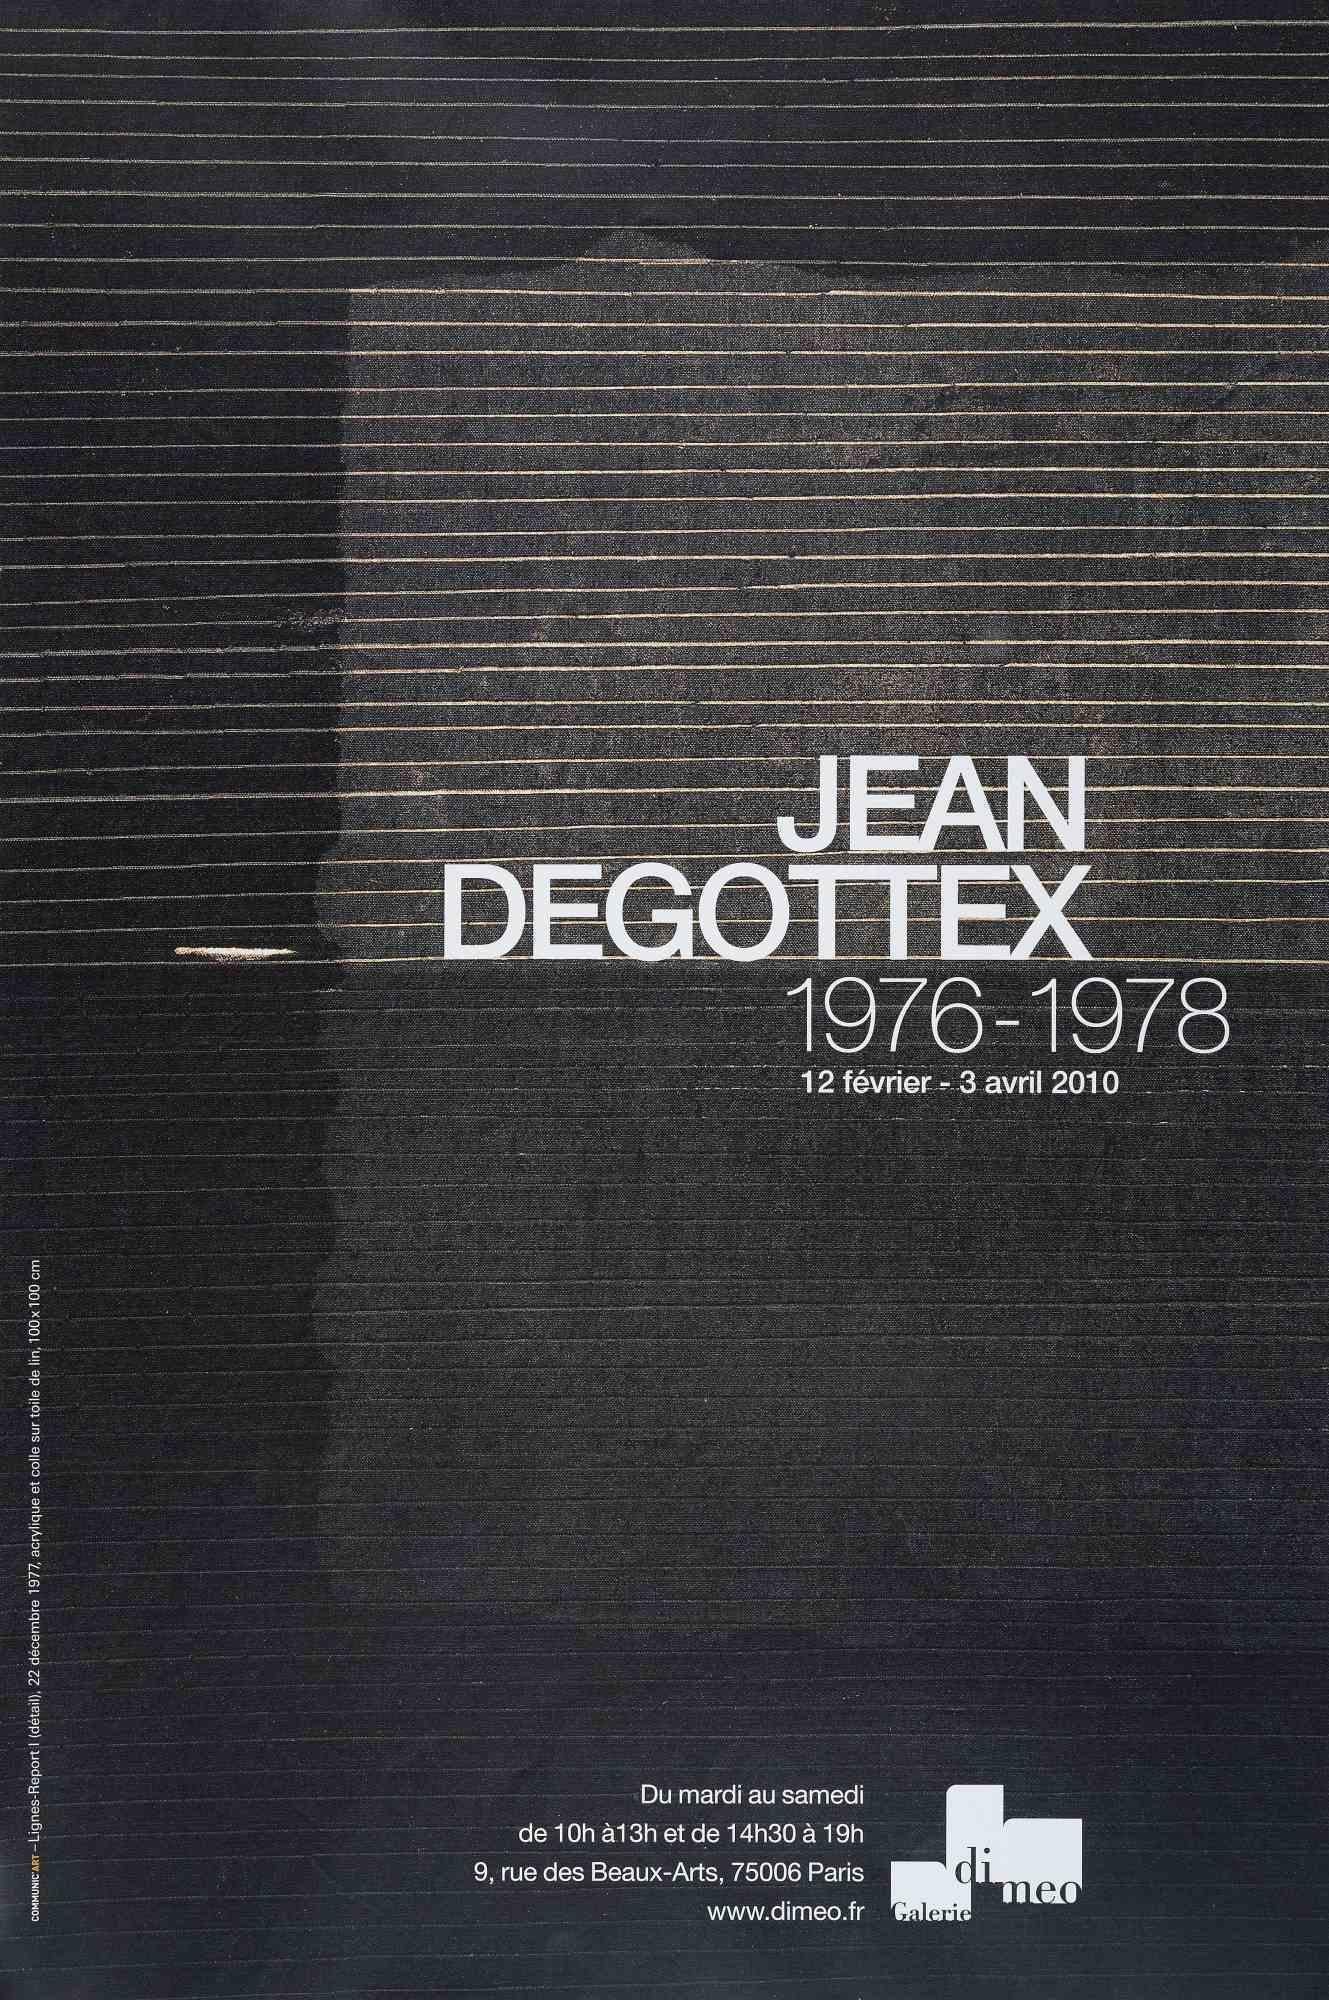 Jean Degottex, Vintage Poster Exhibition est une impression offset réalisée à l'occasion de l'exposition qui s'est tenue à la Meo Gallery en 2010.

Bonnes conditions.